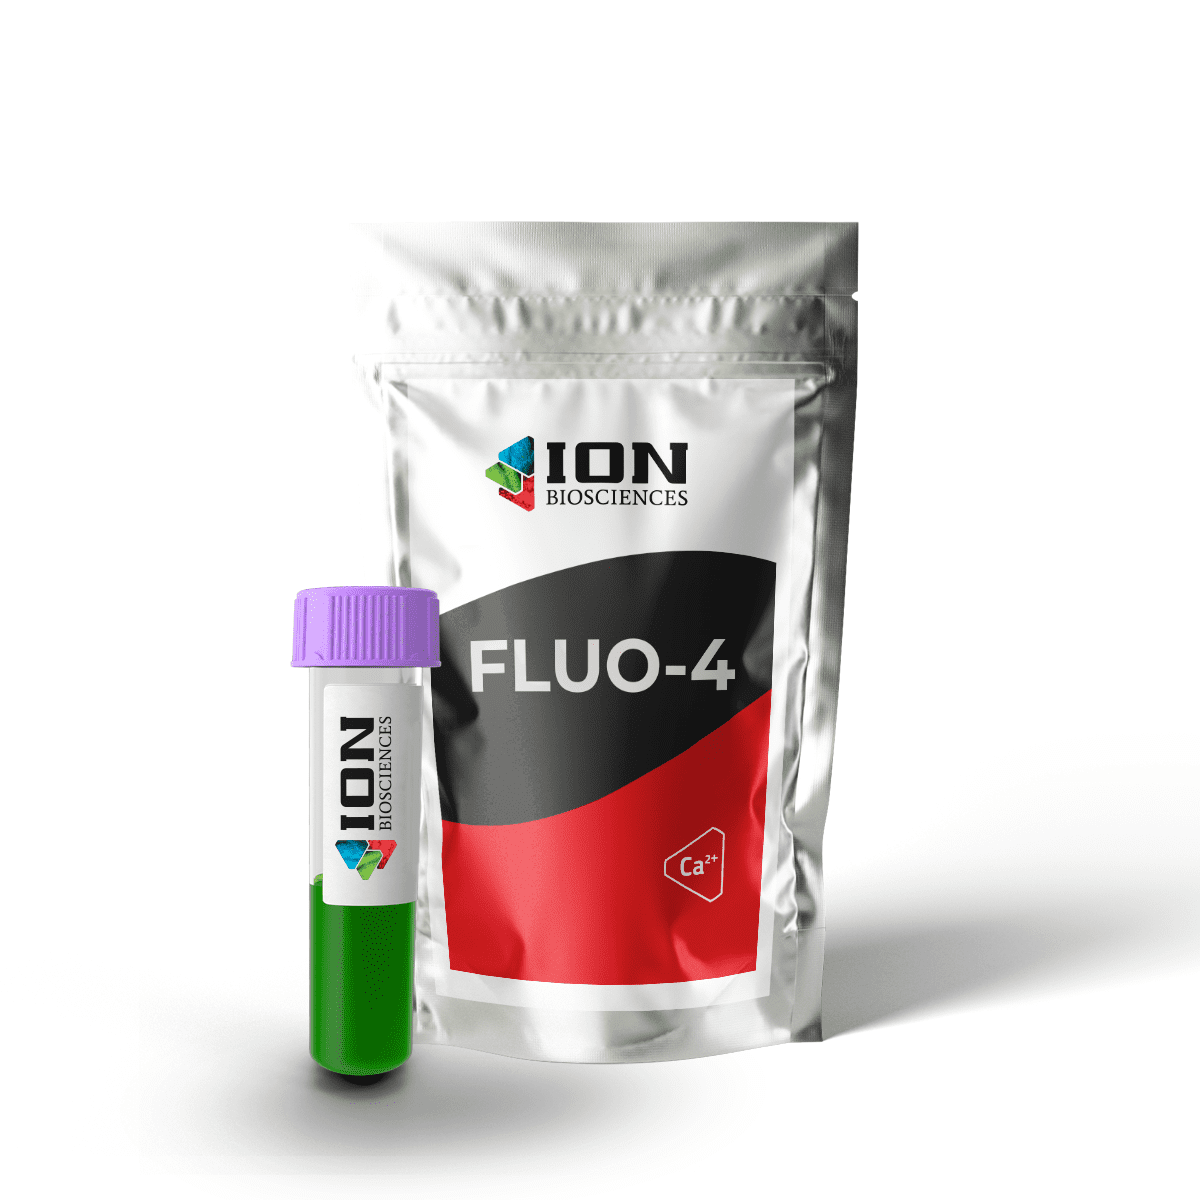 Fluo-4 AM, green fluorescent calcium indicator